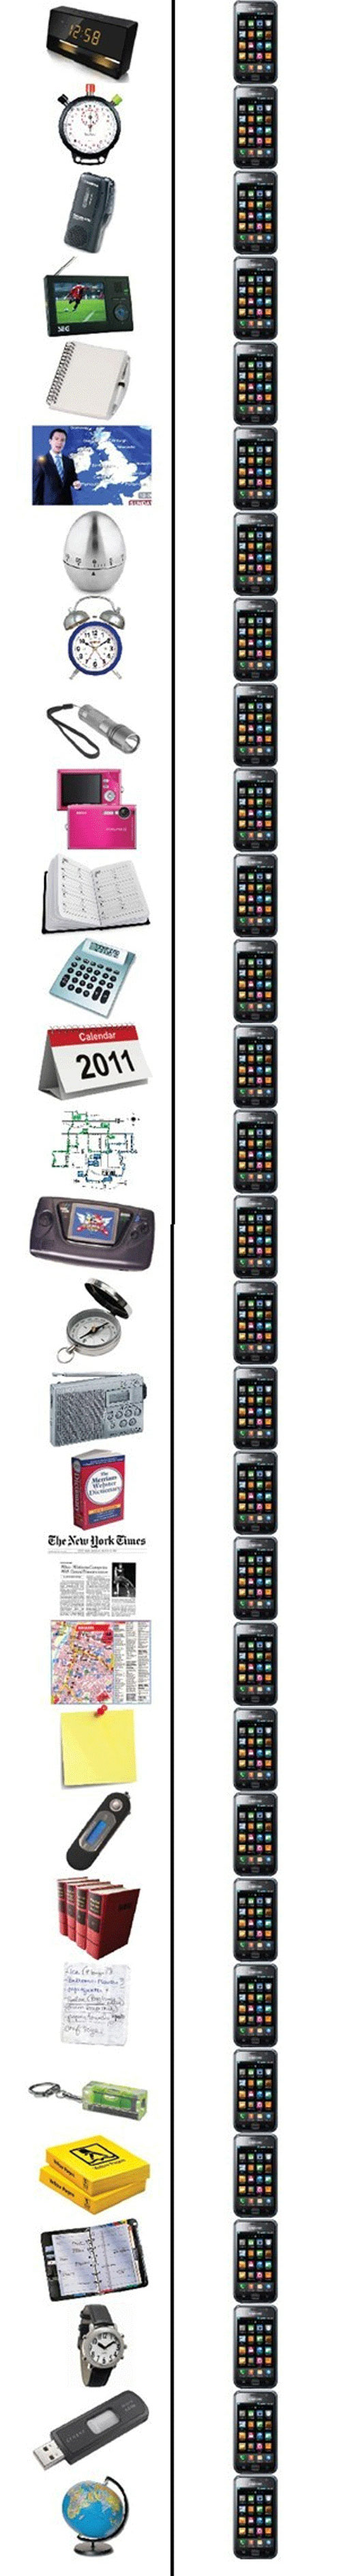 Gadgets 2000 vs Gadgets 2012 (2)